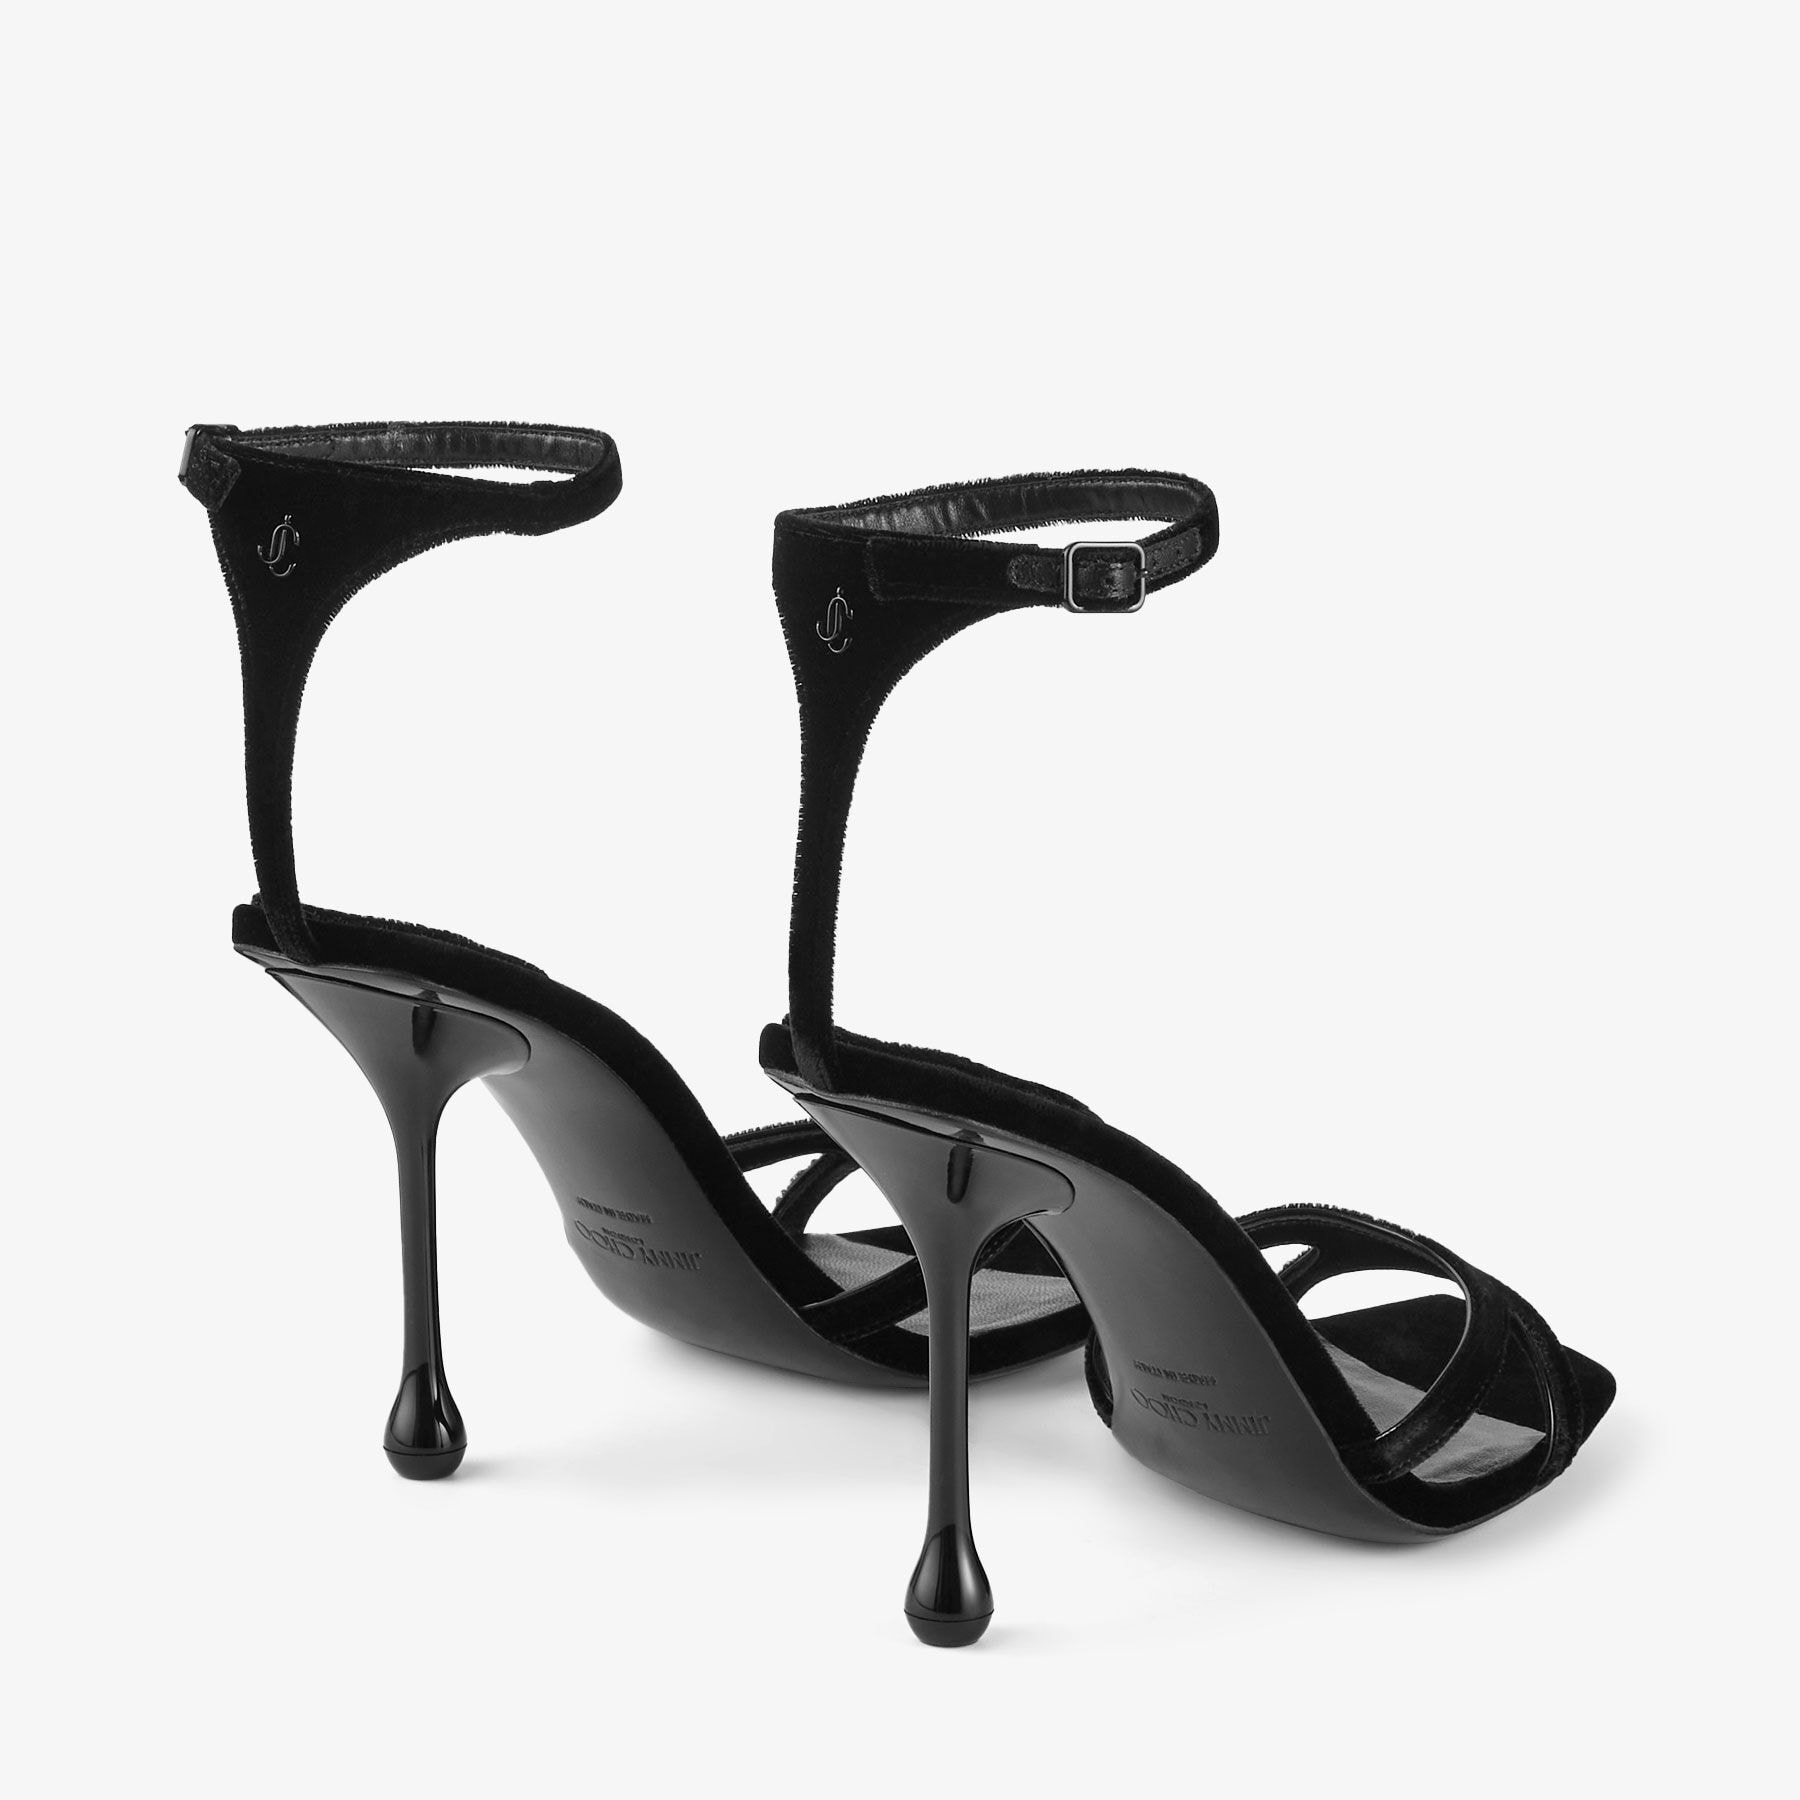 JIMMY CHOO 'ivette' Black Shimmer Leather Strappy Heels Sandals UK 3.5 Eu  36.5 | eBay